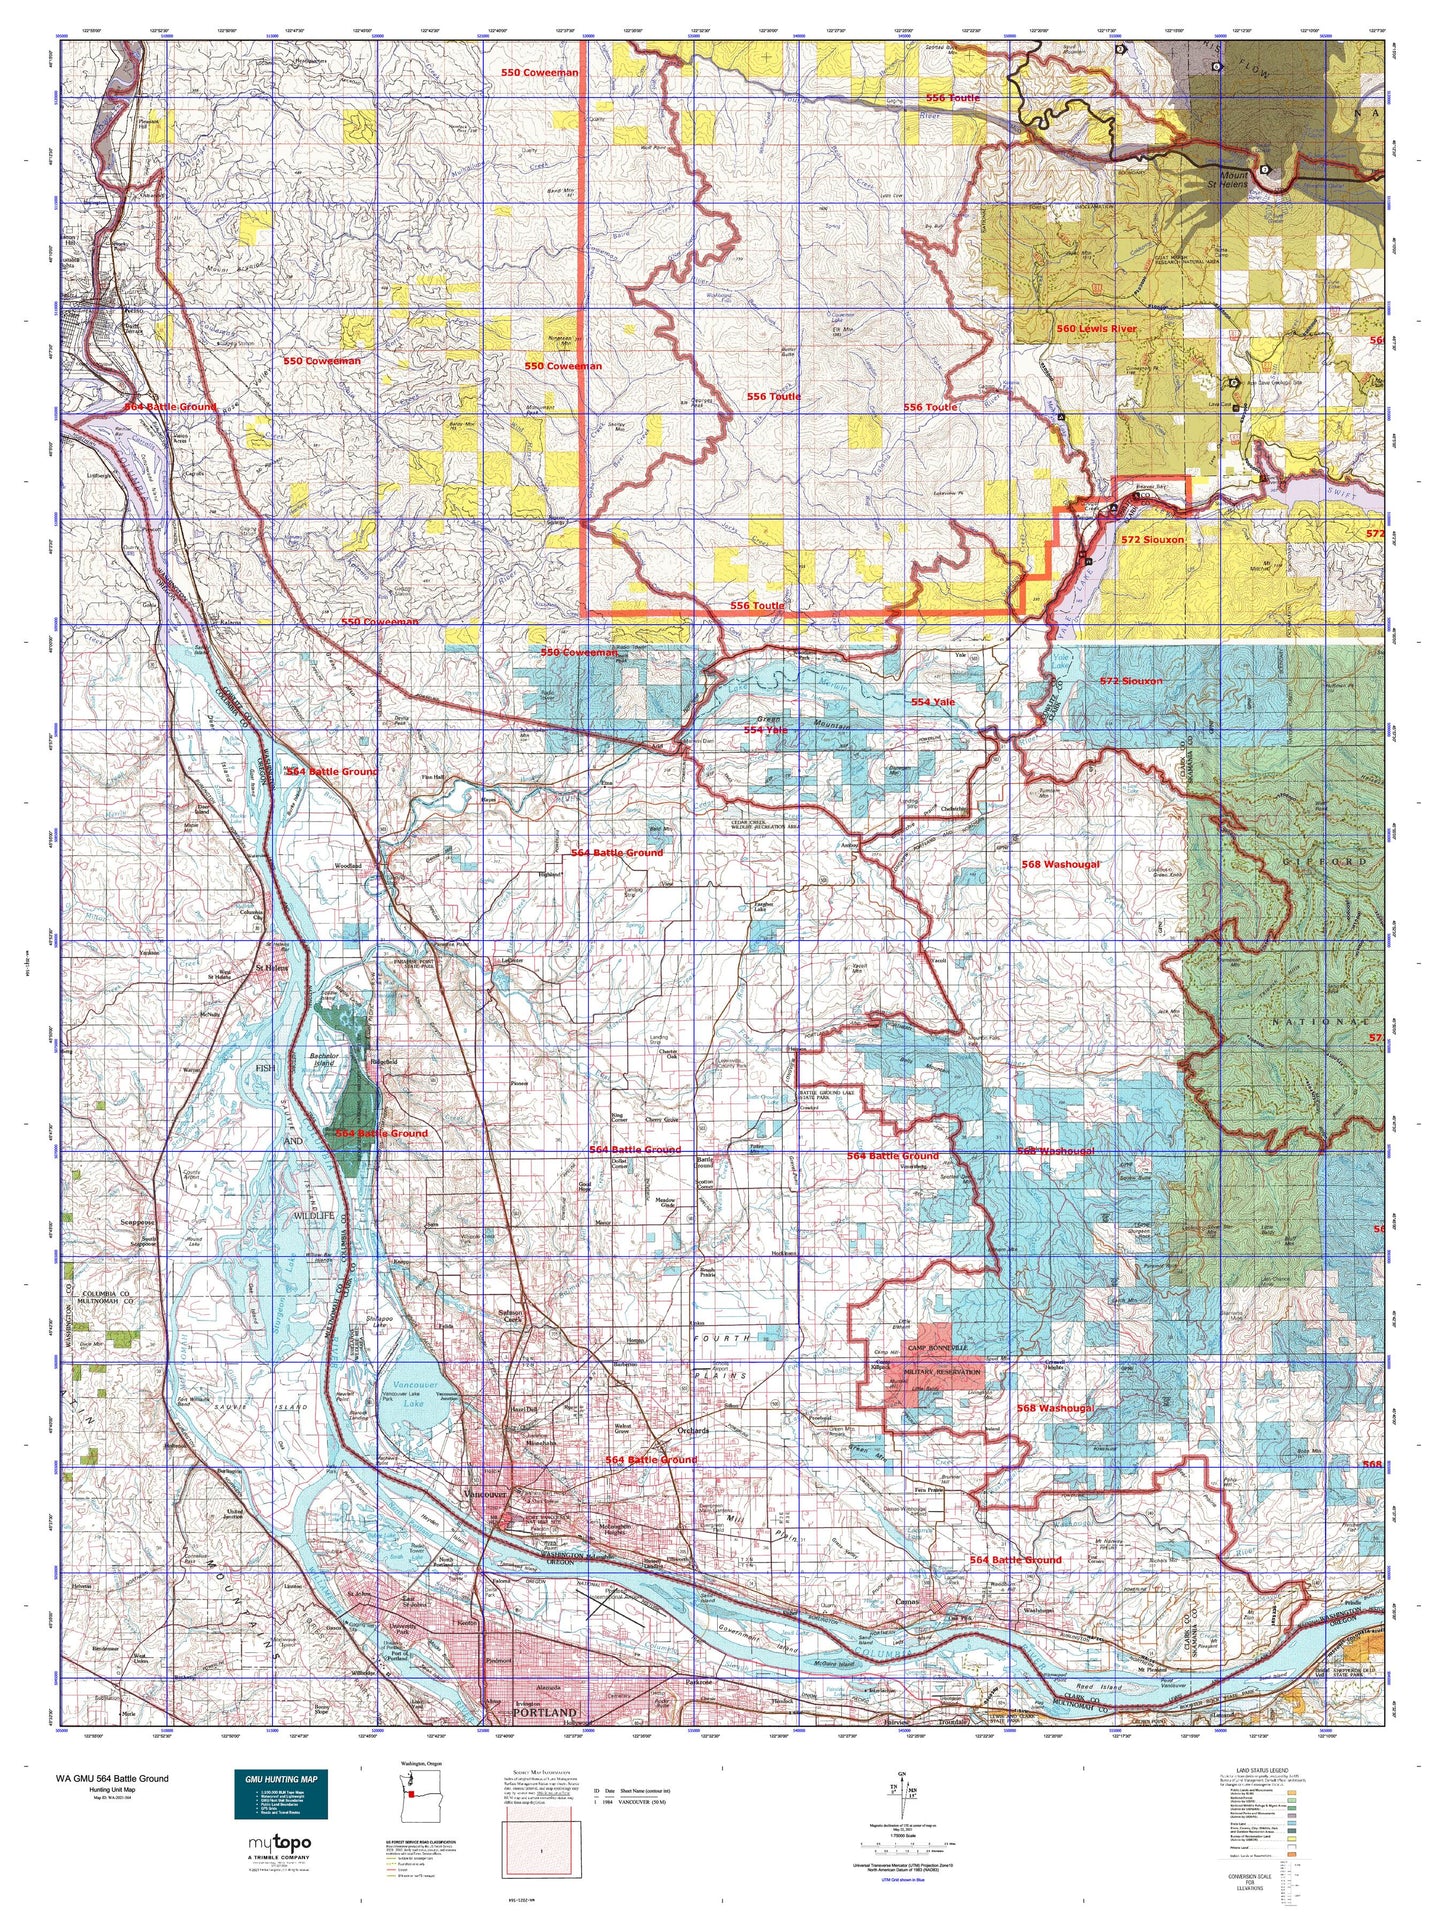 Washington GMU 564 Battle Ground Map Image